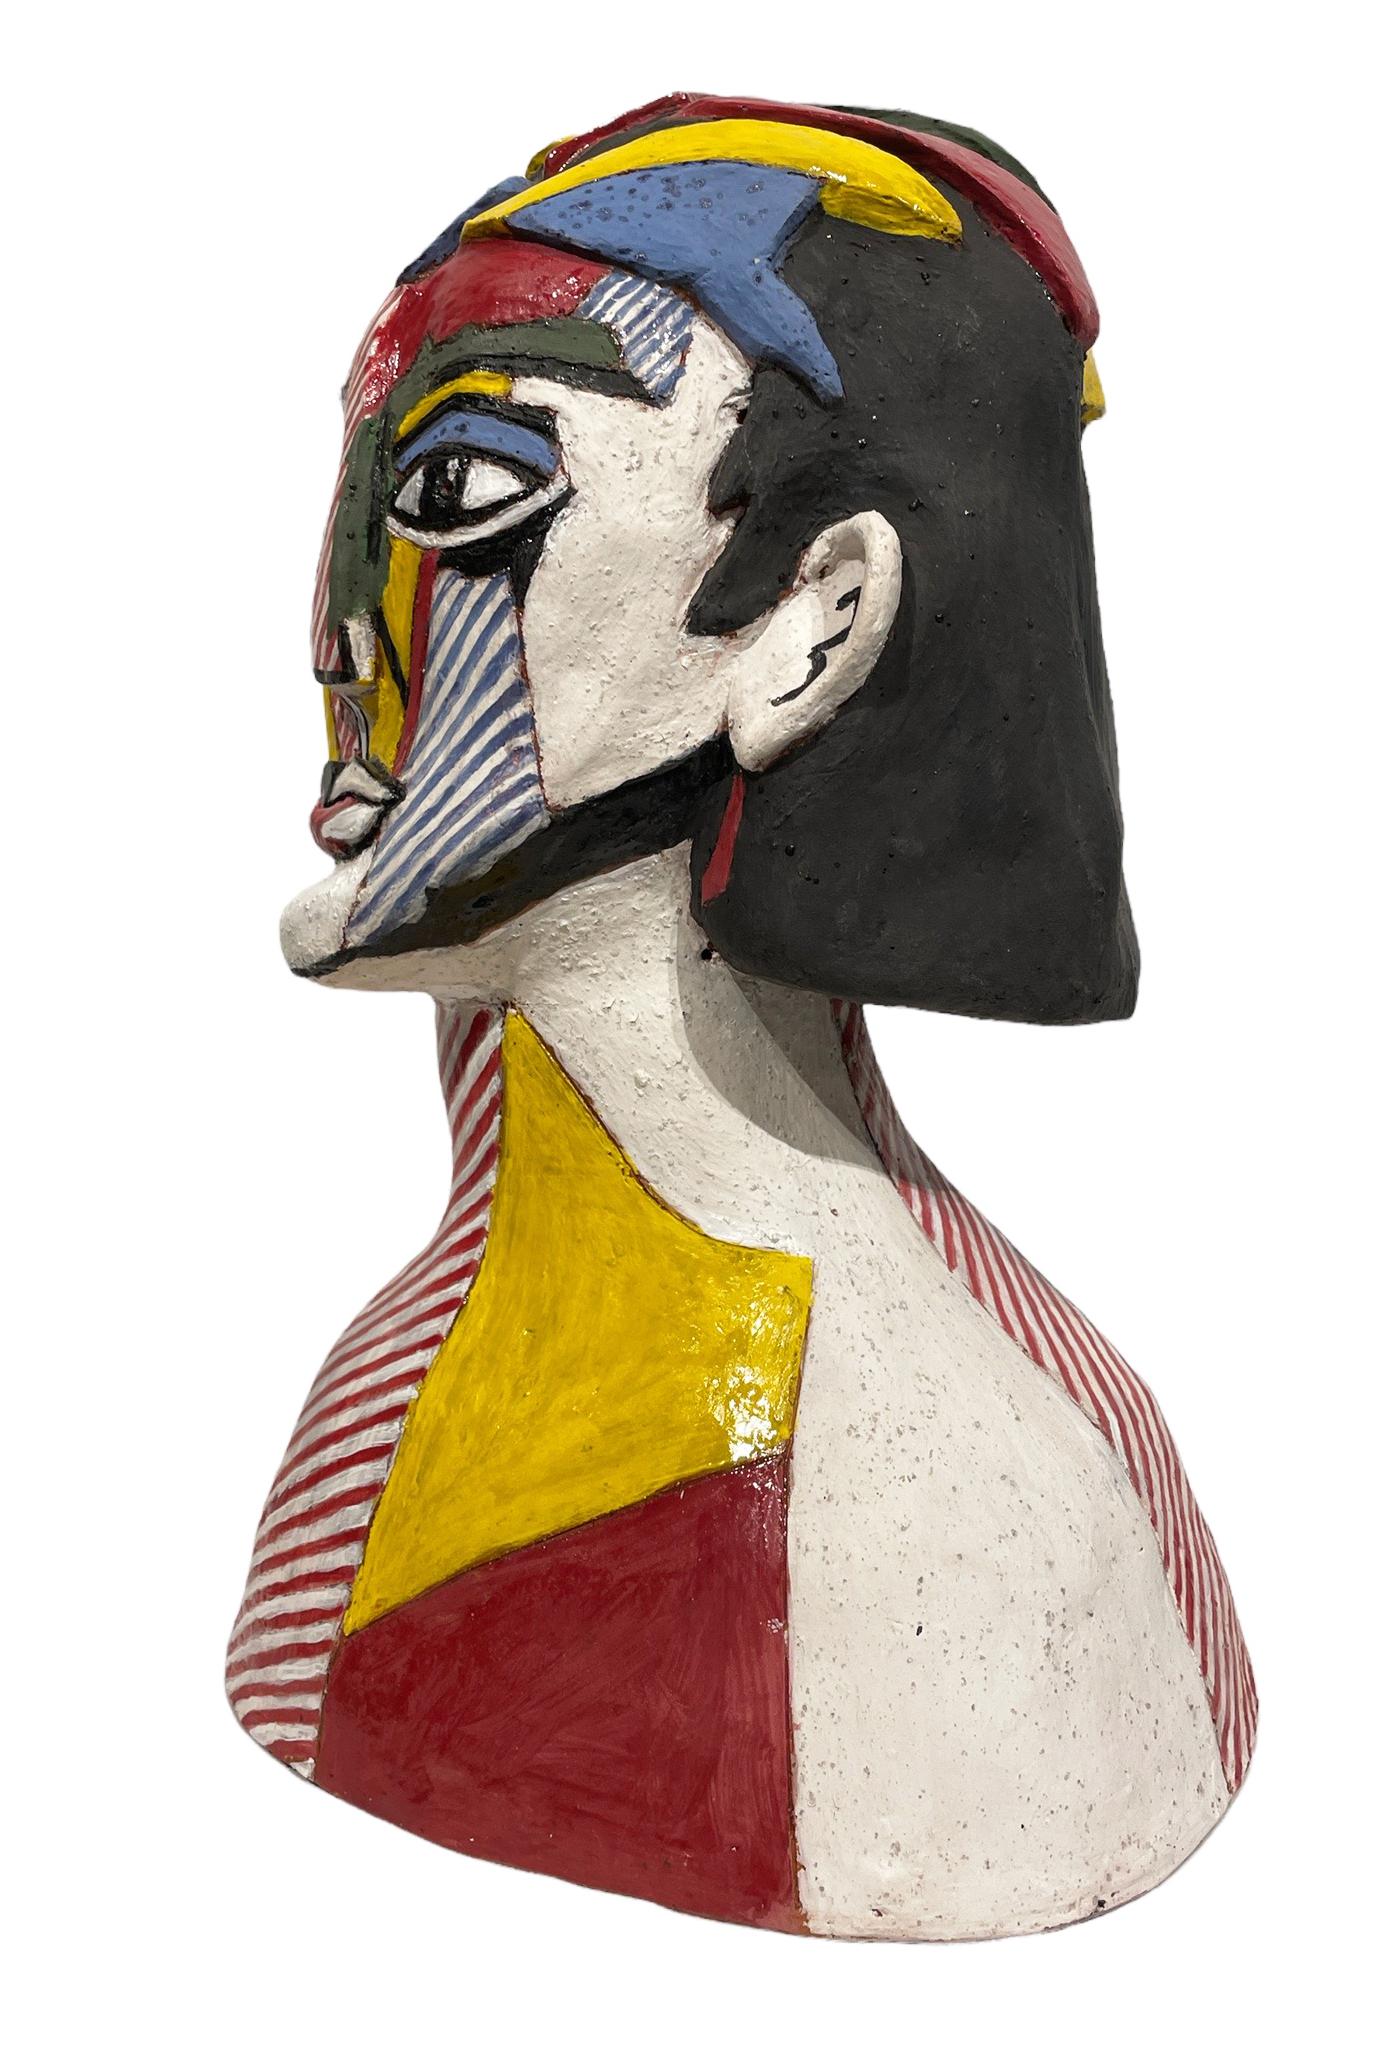 Lichtenstein's Portrait of a Woman - Ode to Roy Lichtenstein, Hand Built Ceramic - Contemporary Sculpture by Sandy Kaplan